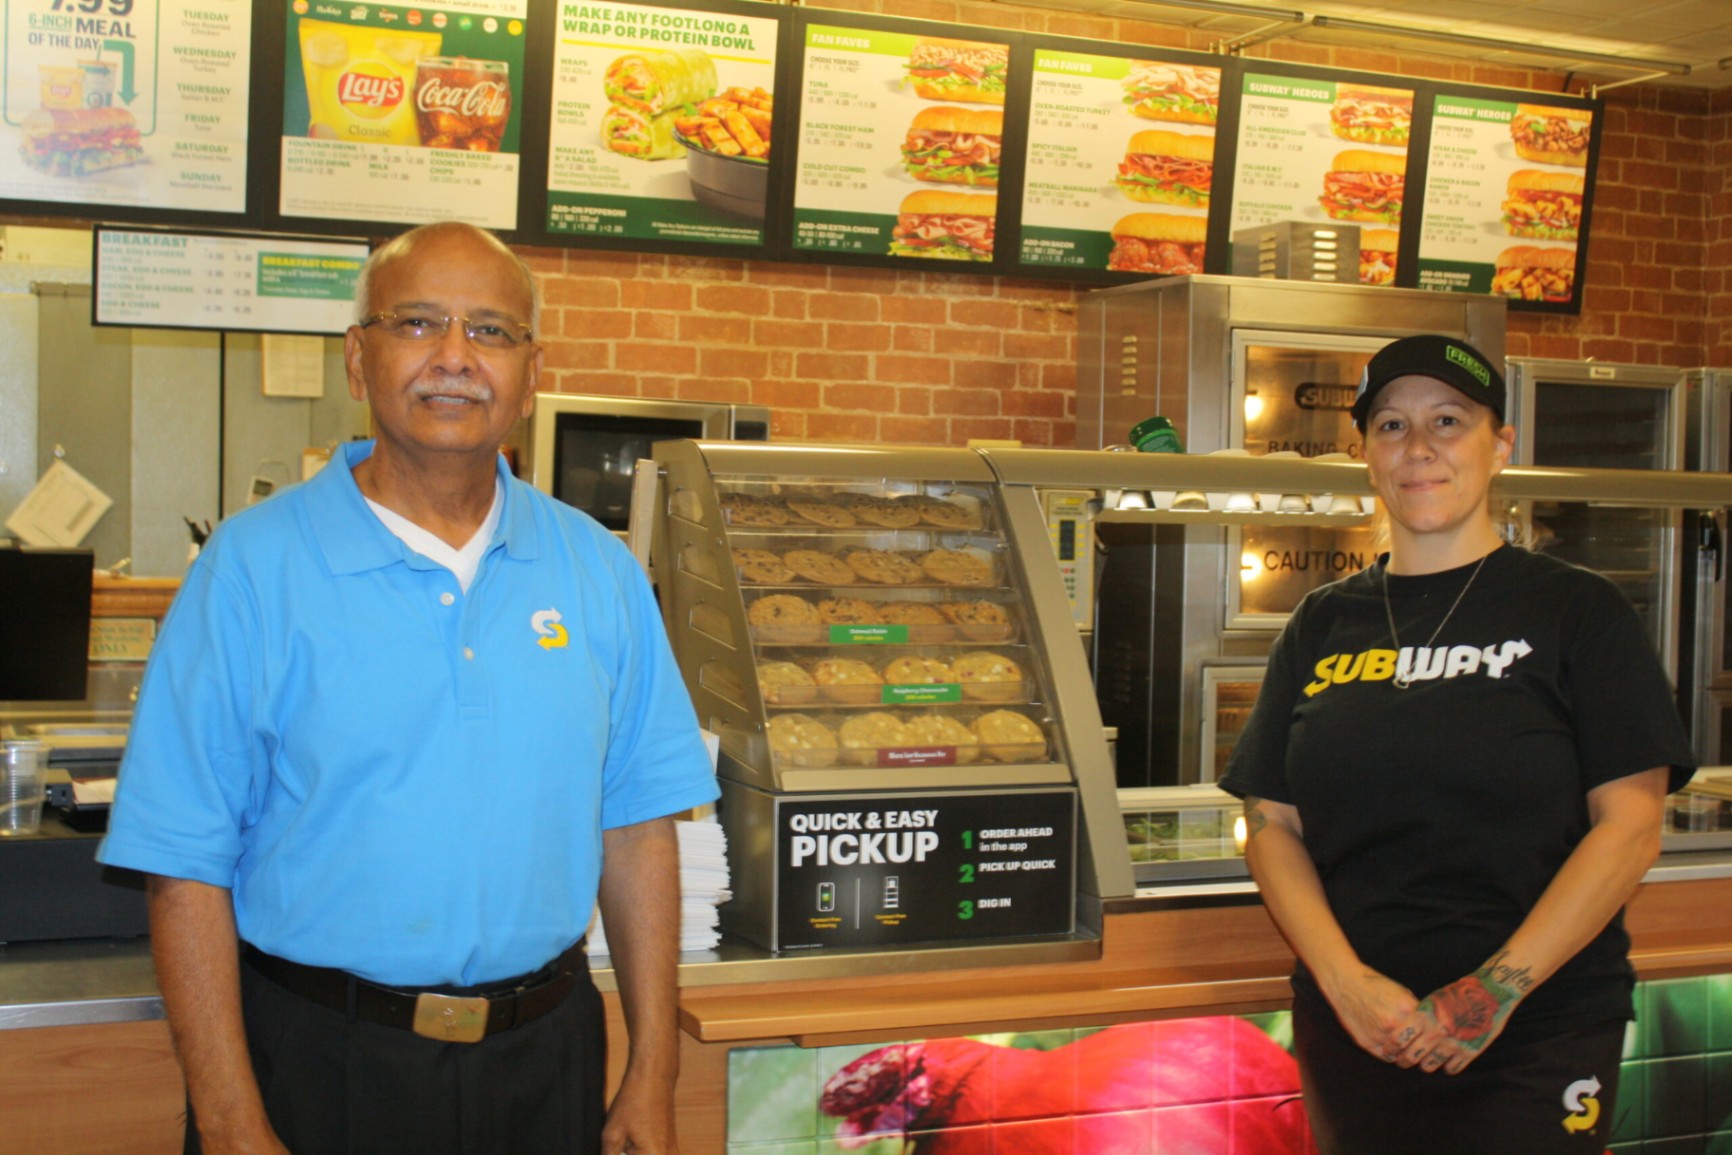 Ofertas de Trabajo en Subway: Aprende Los Pasos Para Aplicar Paso a Paso